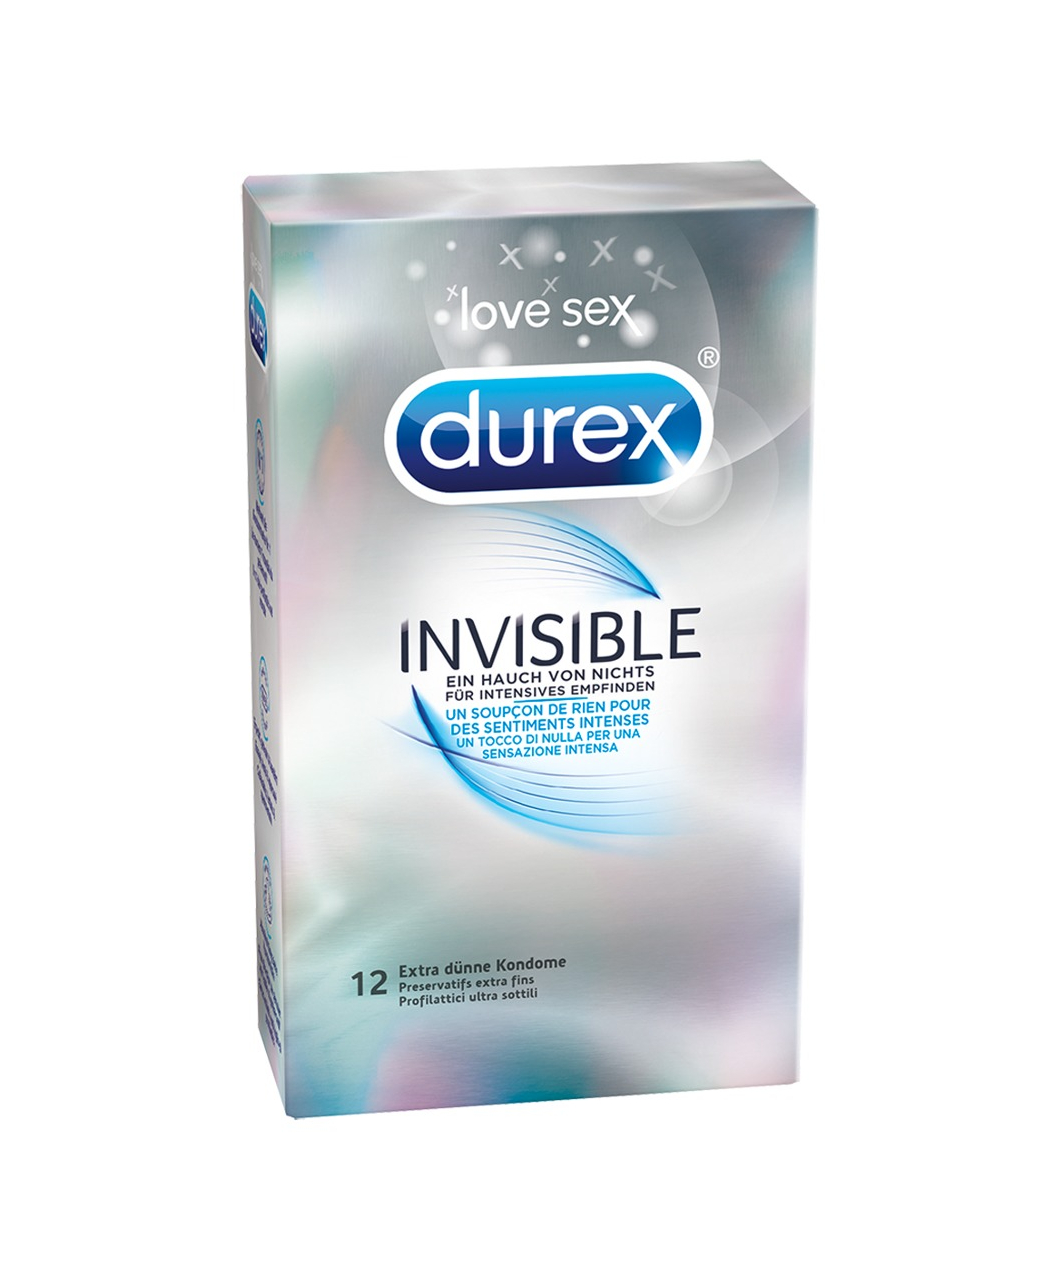 Durex Invisible (12 pcs)